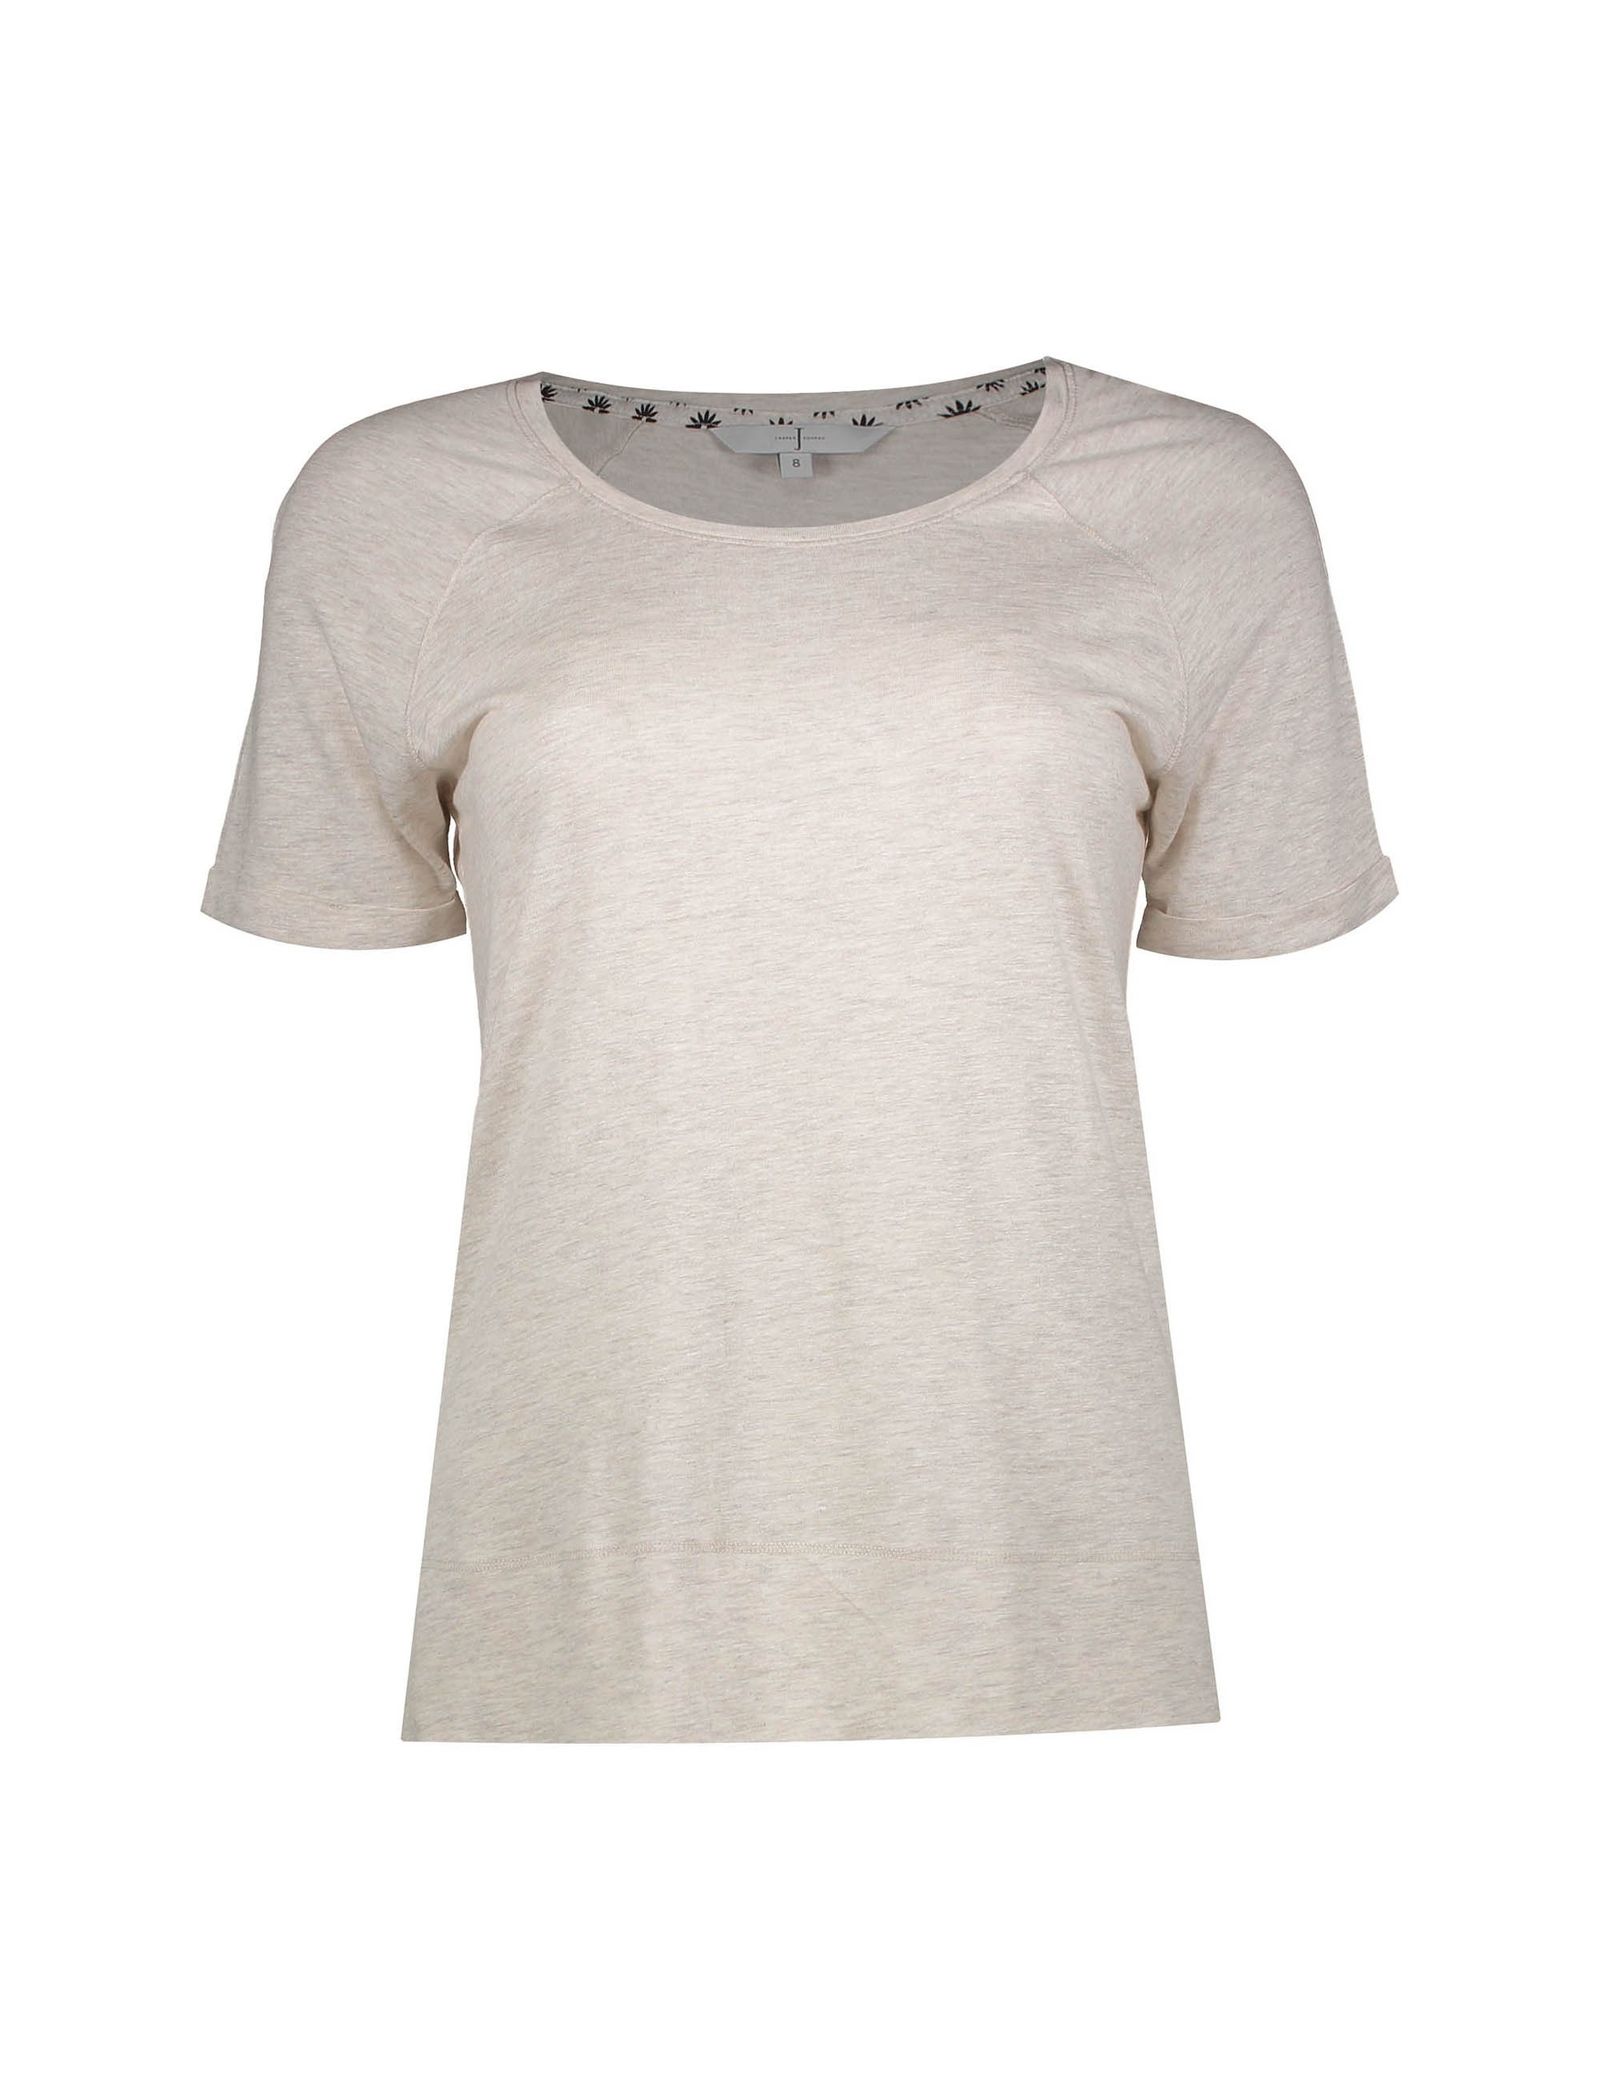 تی شرت و شلوار ویسکوز راحتی زنانه - جی بای جسپرکنران - سفيد - 3